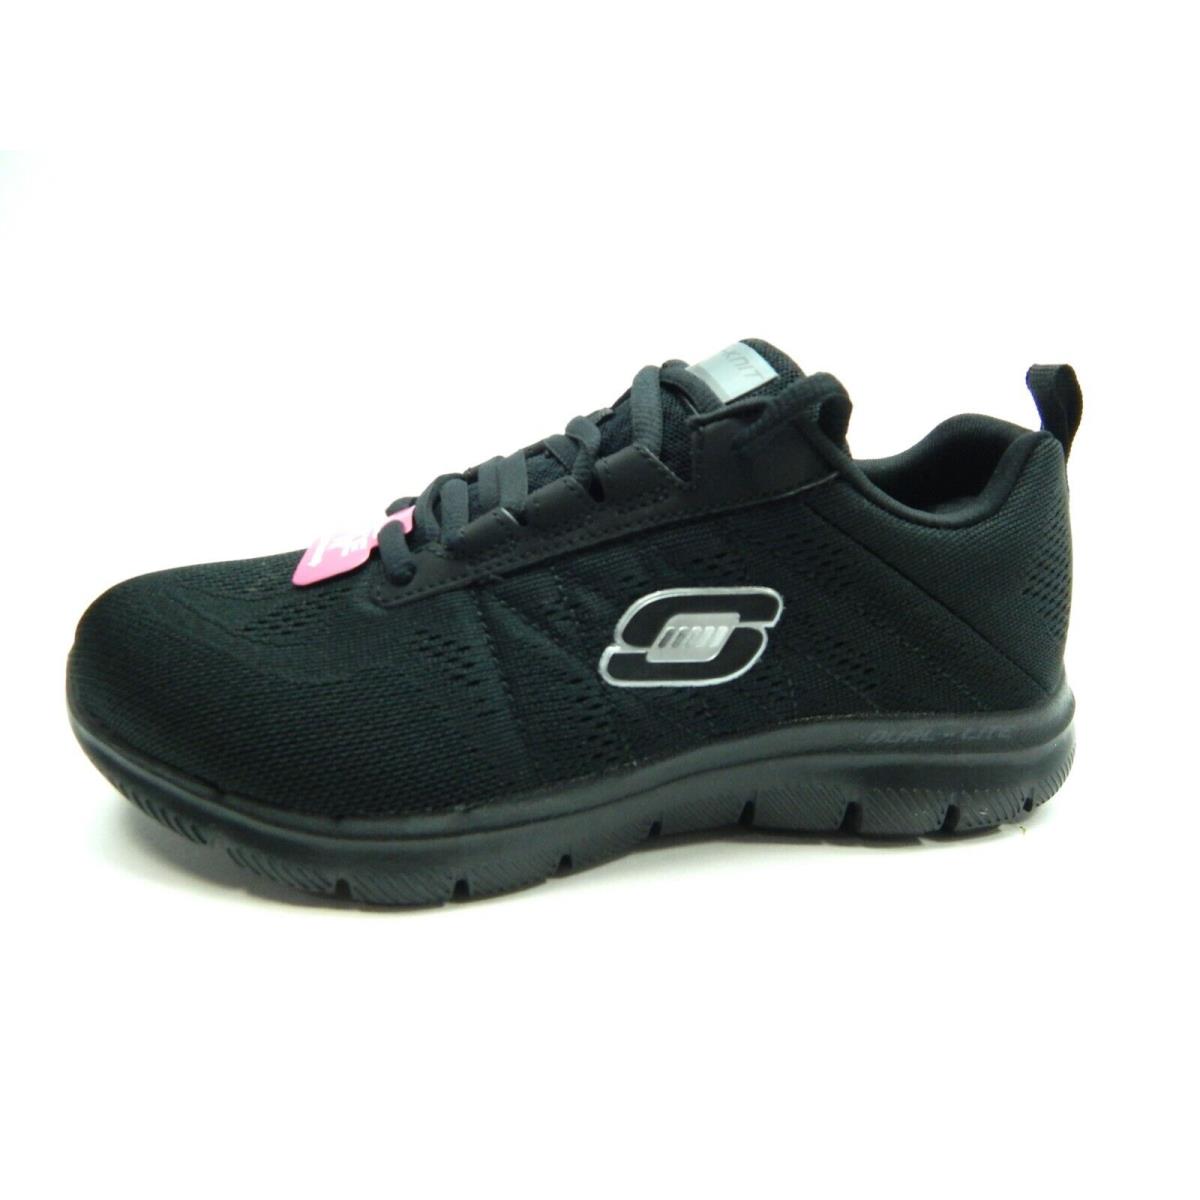 Skechers Wide Fit Flex Appeal 2.0 Black Women Shoes Size 5